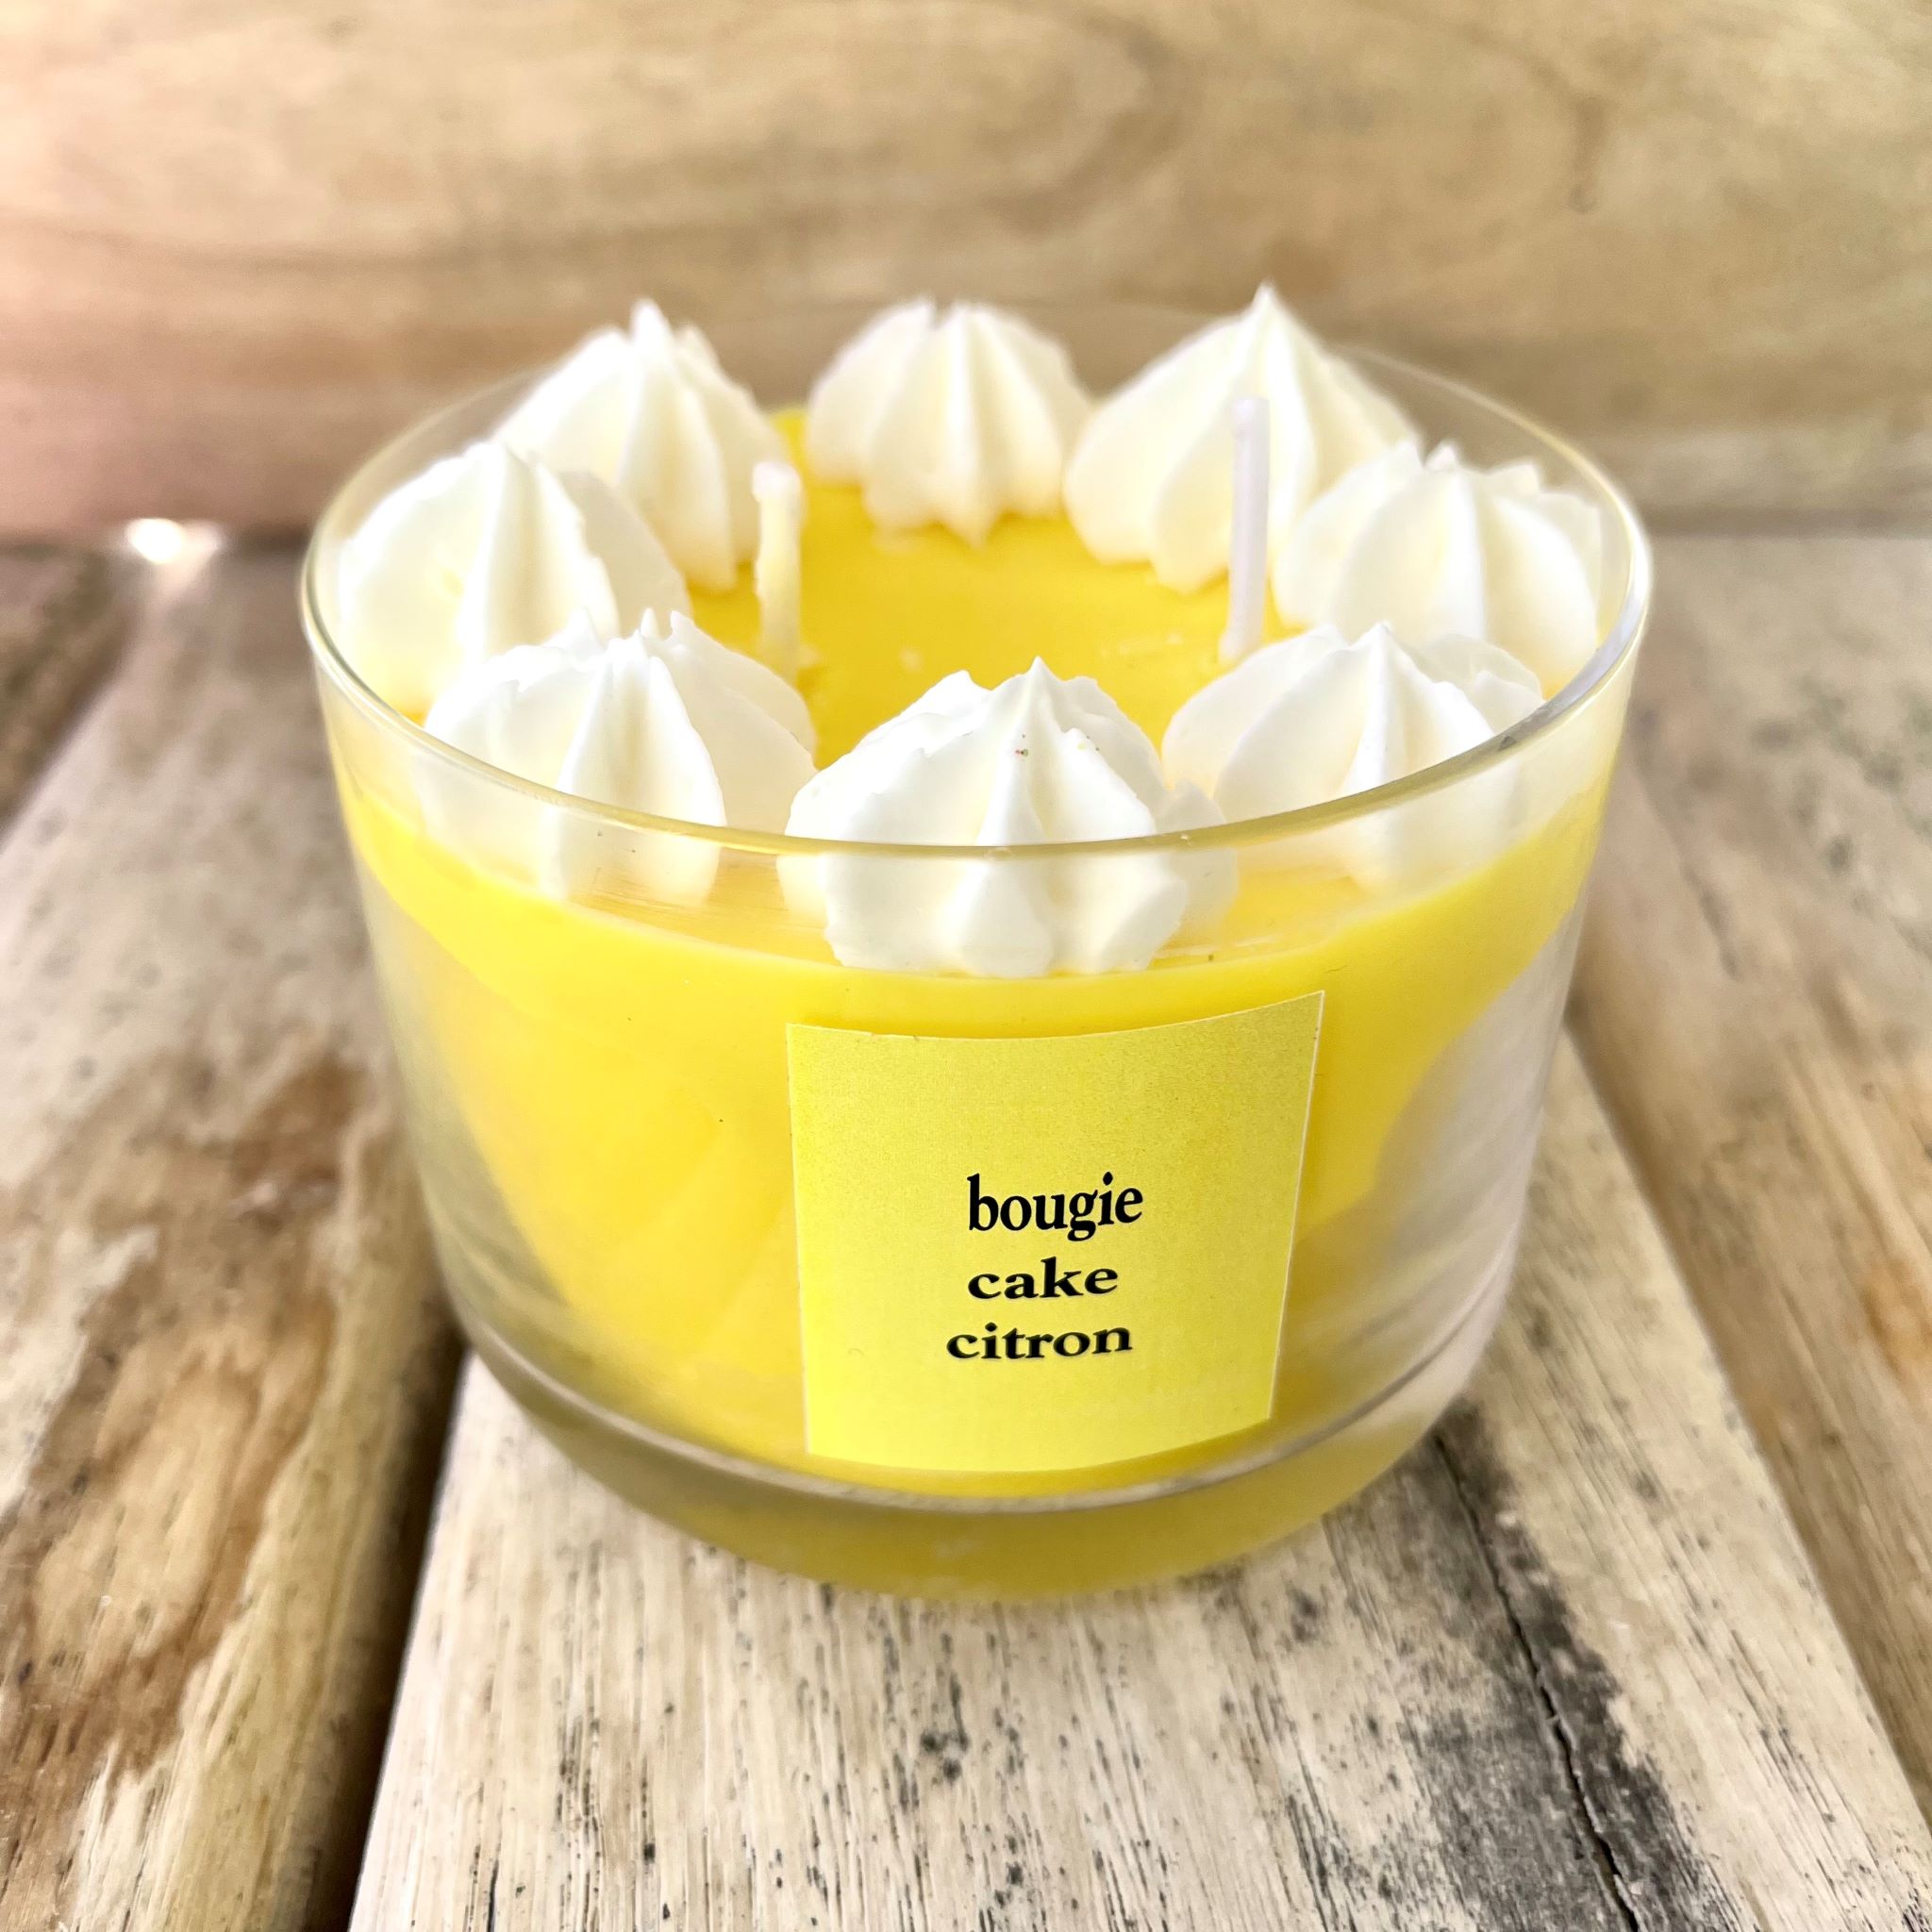 Bougie Cake Citron image